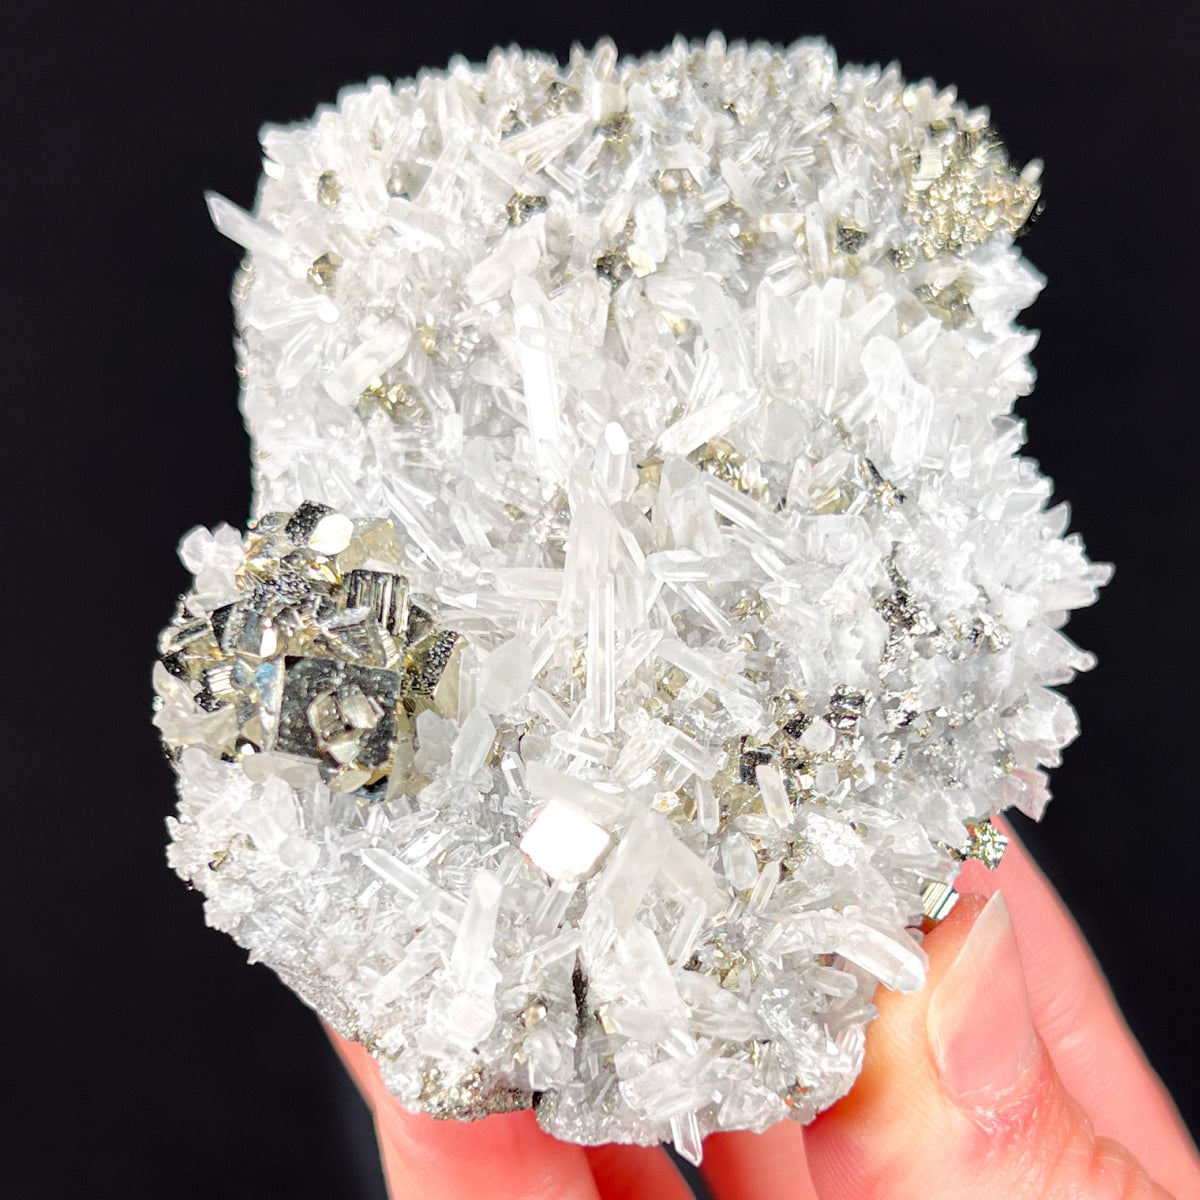 Pyrite Specimen with Quartz Crystals